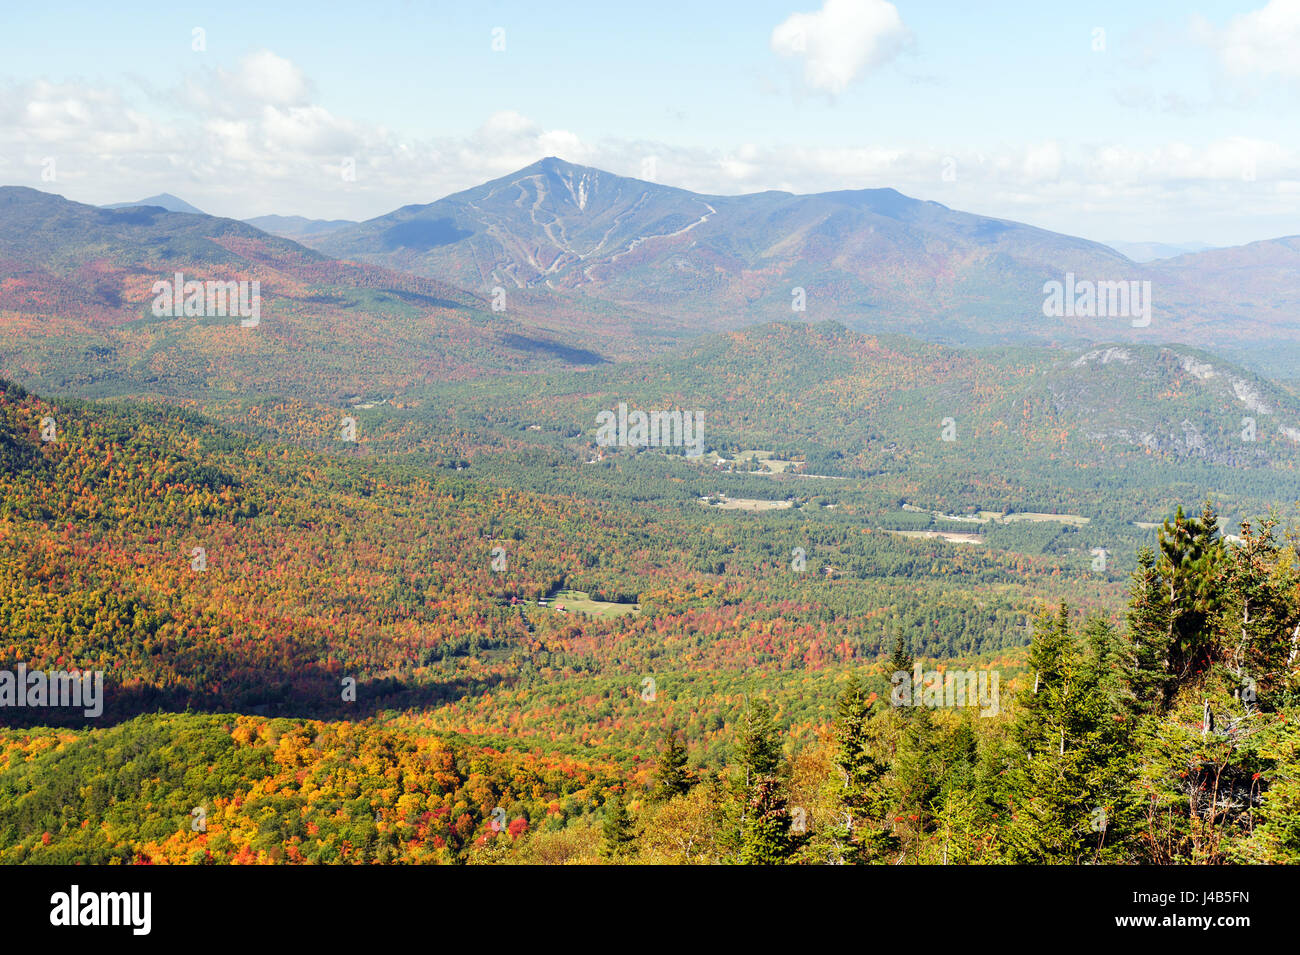 Vue sur le mont Whiteface mt de Jay, région des Adirondacks, New York State, USA. Banque D'Images